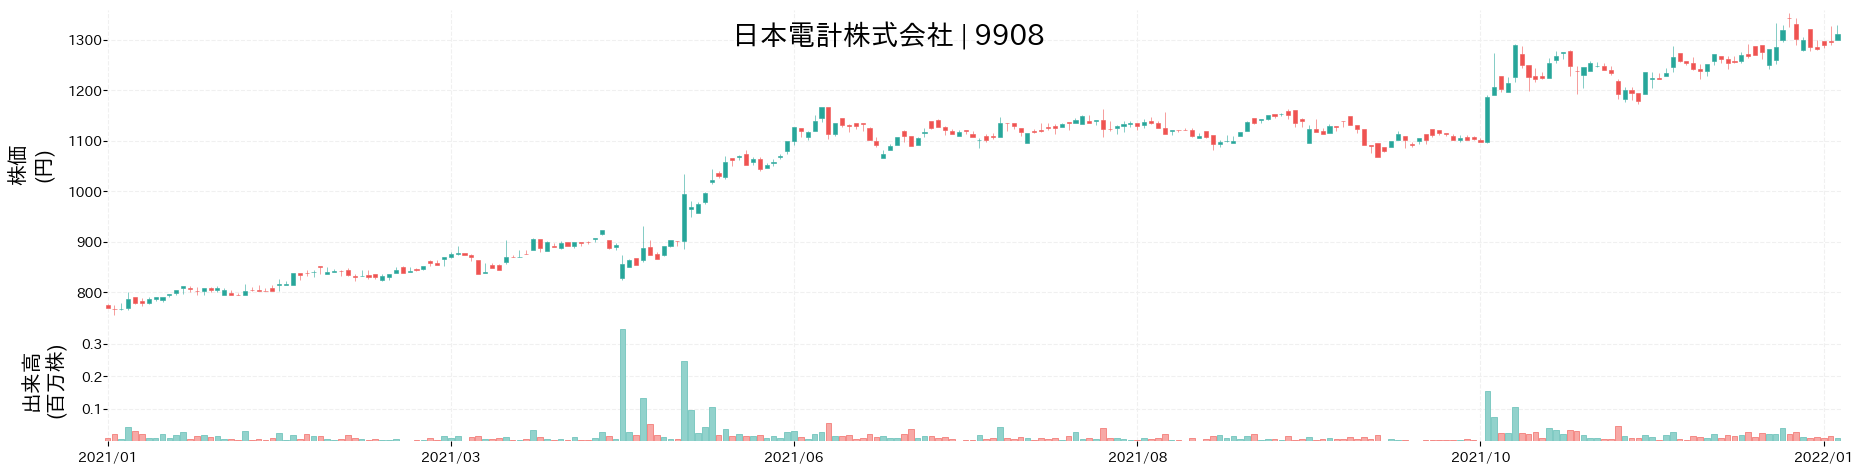 日本電計の株価推移(2021)